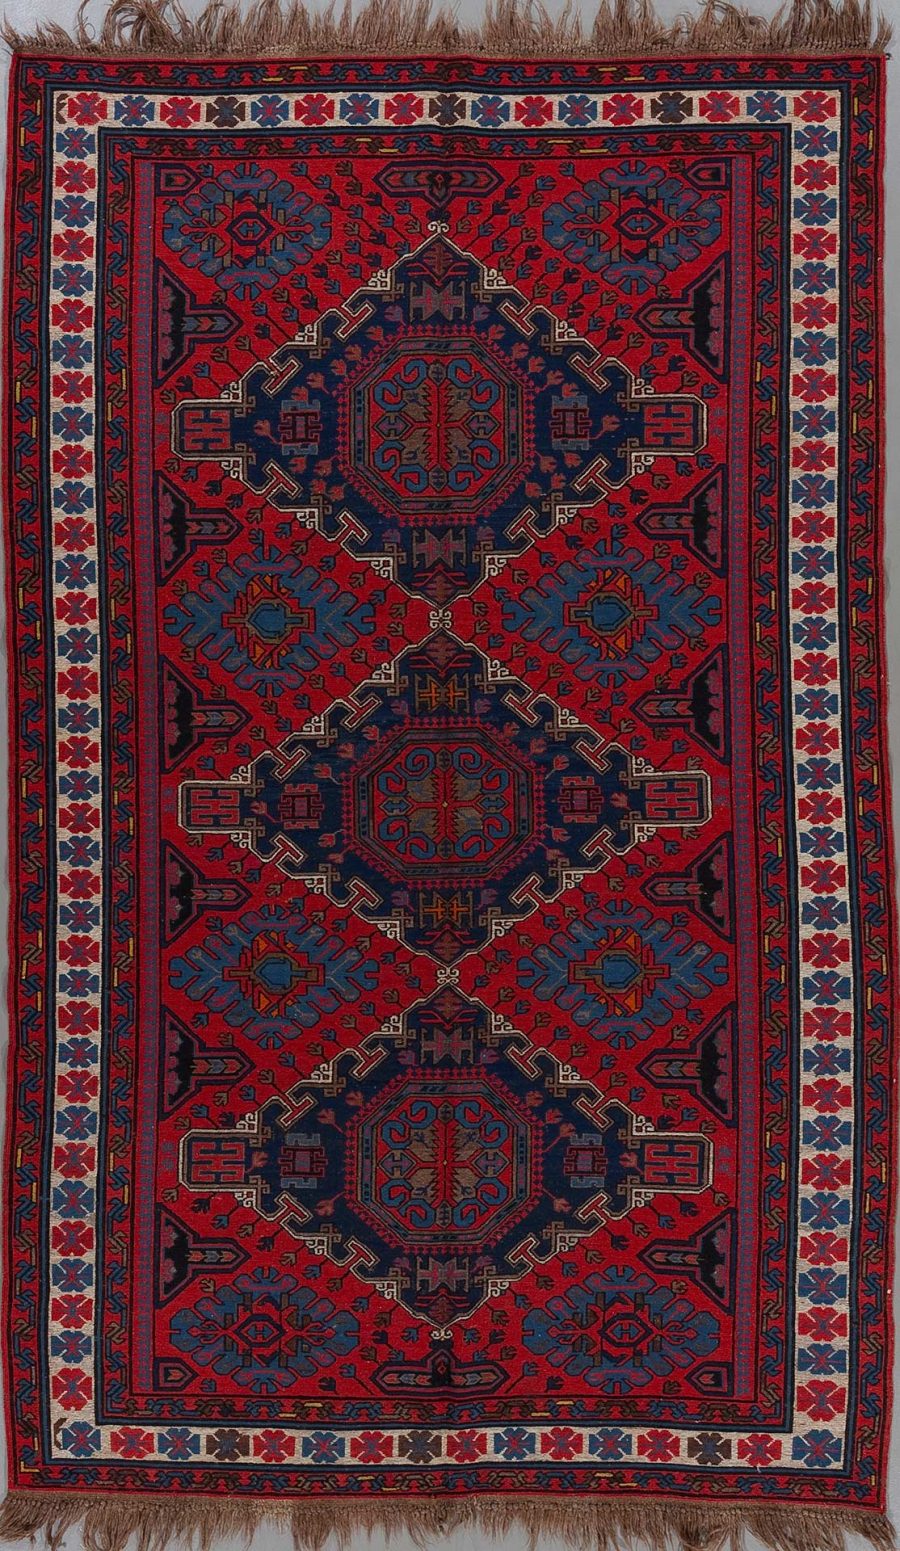 Detailaufnahme eines traditionellen orientalischen Teppichs mit komplexem Muster aus geometrischen Formen und pflanzlichen Motiven in Rot-, Blau- und Beigetönen, eingefasst von mehreren Bordüren und verziert mit Fransen am oberen und unteren Ende.